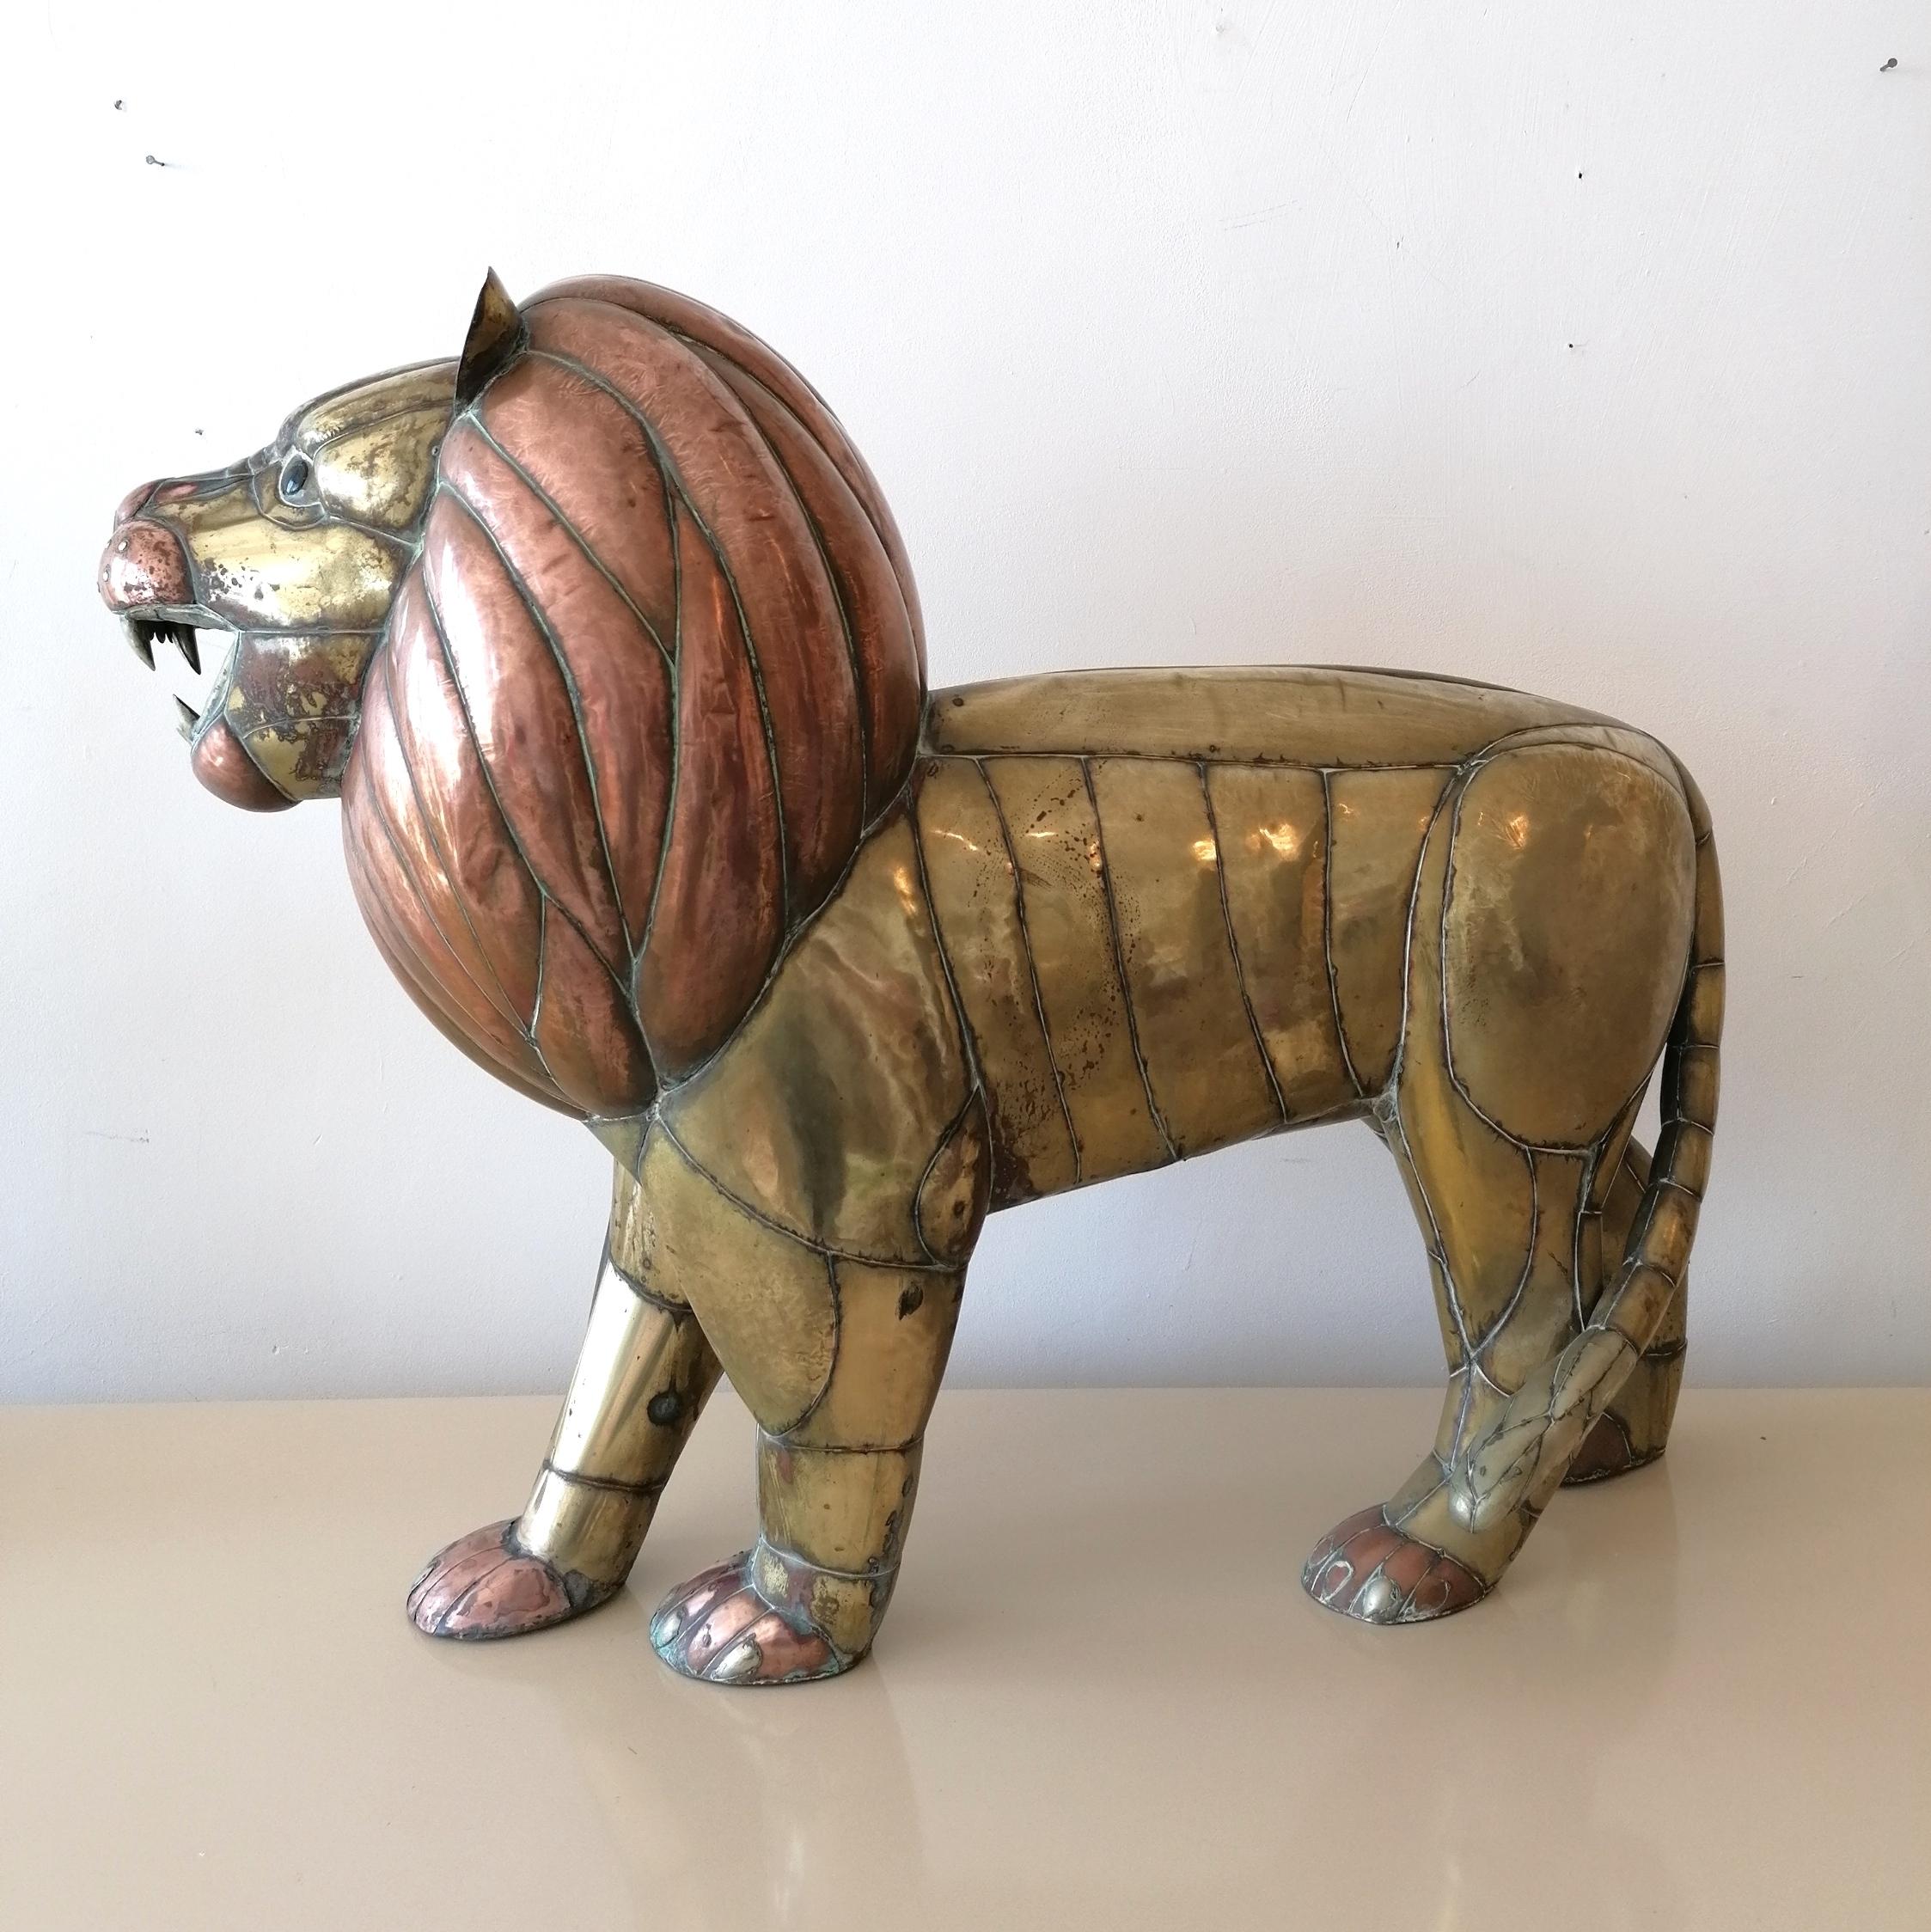 Une sculpture monumentale de lion réalisée par le célèbre artiste mexicain Sergio Bustamante dans les années 1970. La figure est modelée à partir d'un patchwork soudé complexe de feuilles de laiton et de cuivre. Le lion a des yeux de verre.
Il n'y a